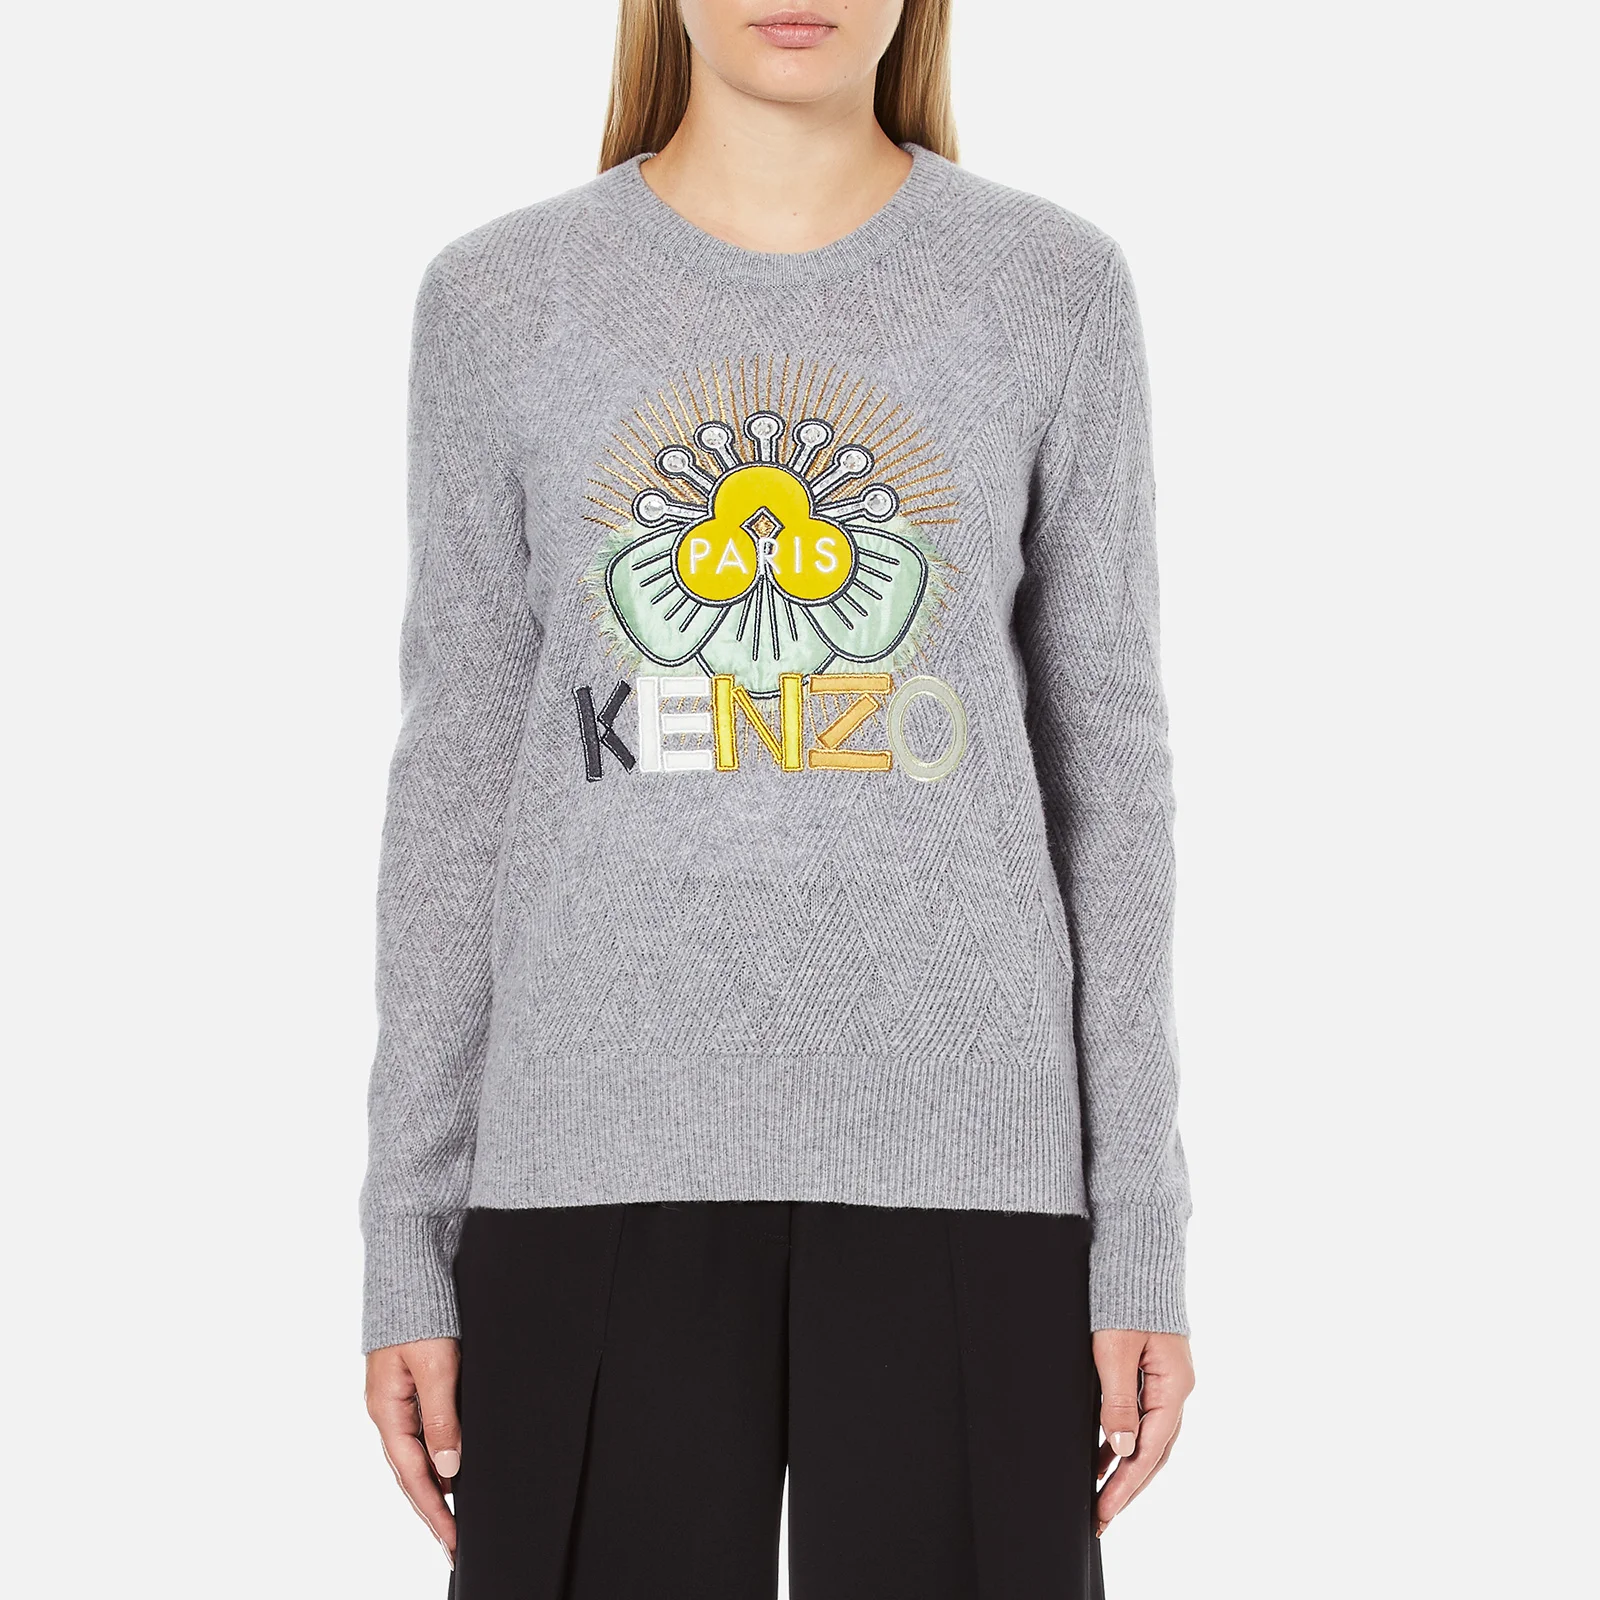 KENZO Women's Flower Logo Knitted Jumper - Light Grey Image 1